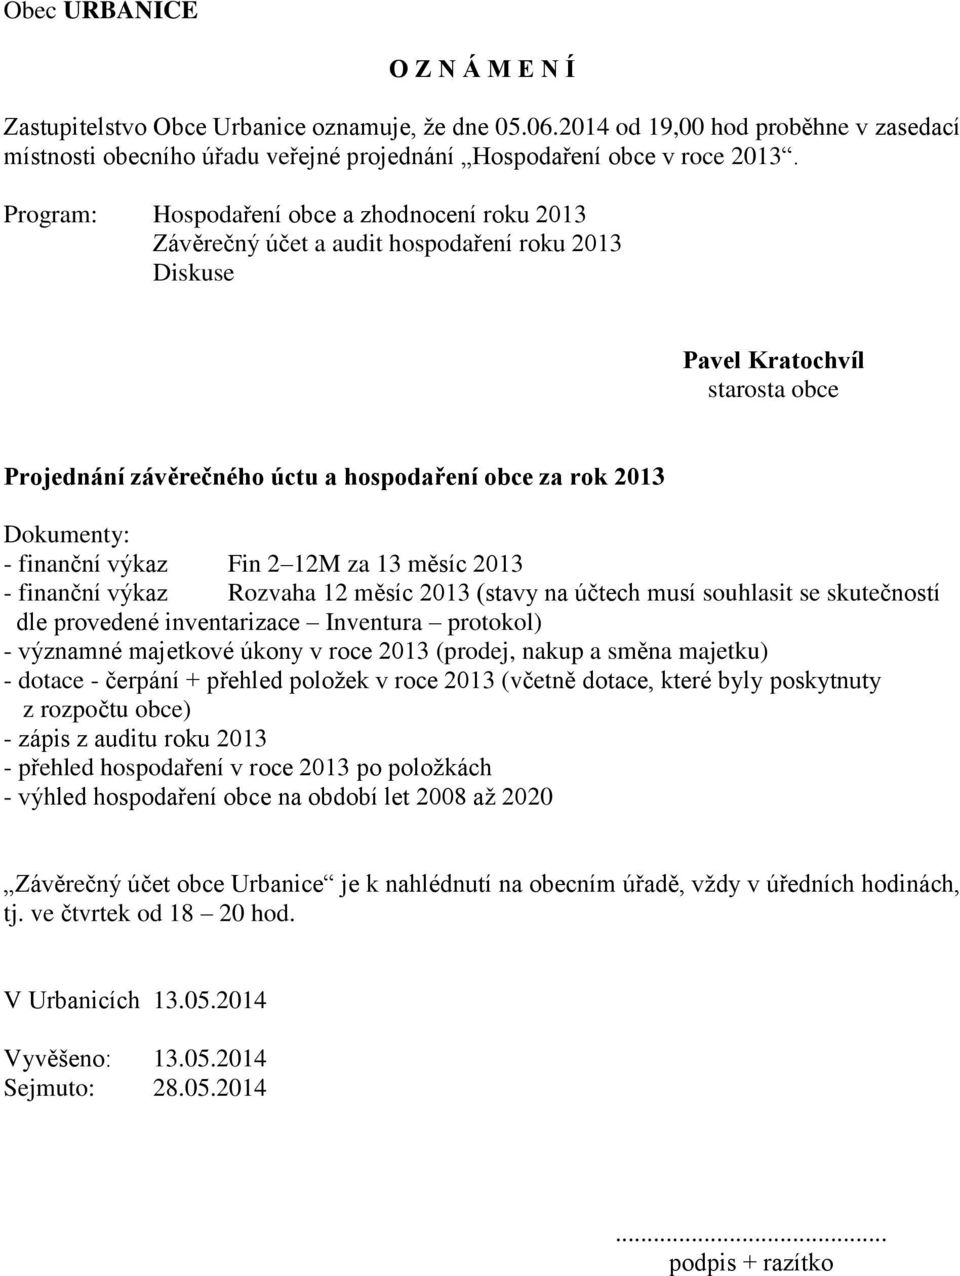 Dokumenty: - finanční výkaz Fin 2 12M za 13 měsíc 2013 - finanční výkaz Rozvaha 12 měsíc 2013 (stavy na účtech musí souhlasit se skutečností dle provedené inventarizace Inventura protokol) - významné